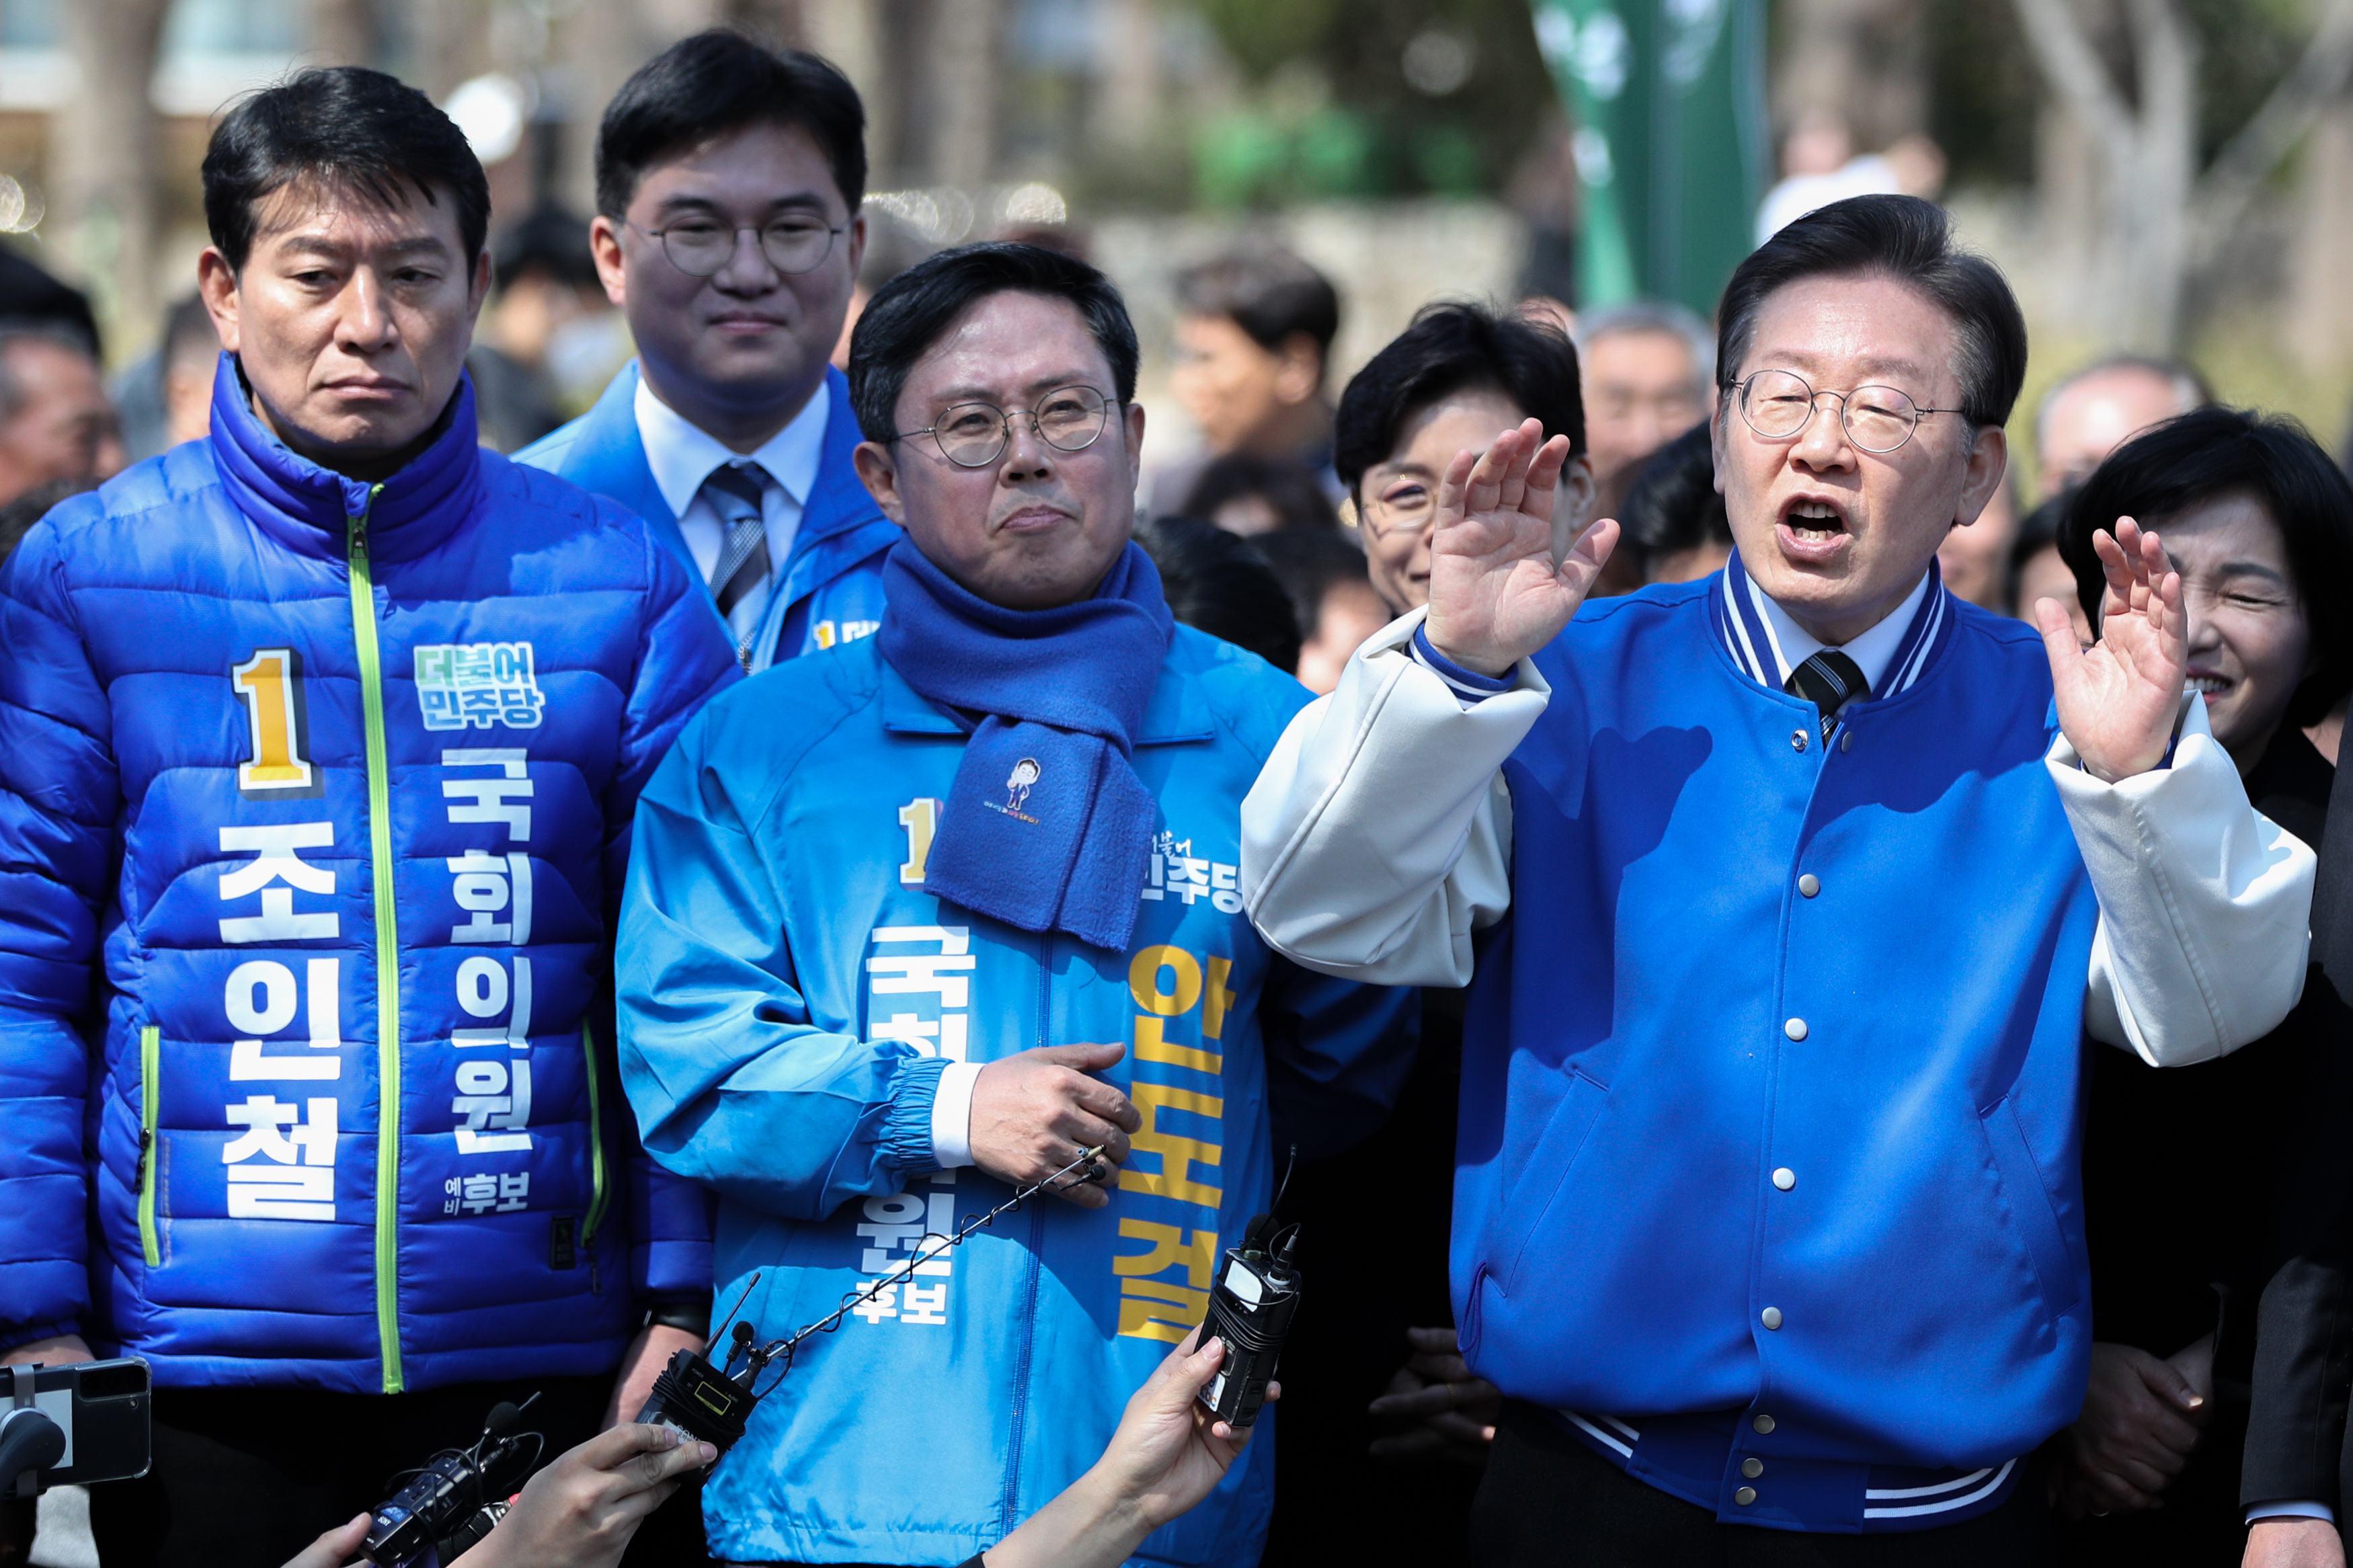 이재명(오른쪽) 더불어민주당 대표가 21일 광주 전남대 후문 앞에서 시민들에게 지지를 호소하는 모습. 광주 뉴스1